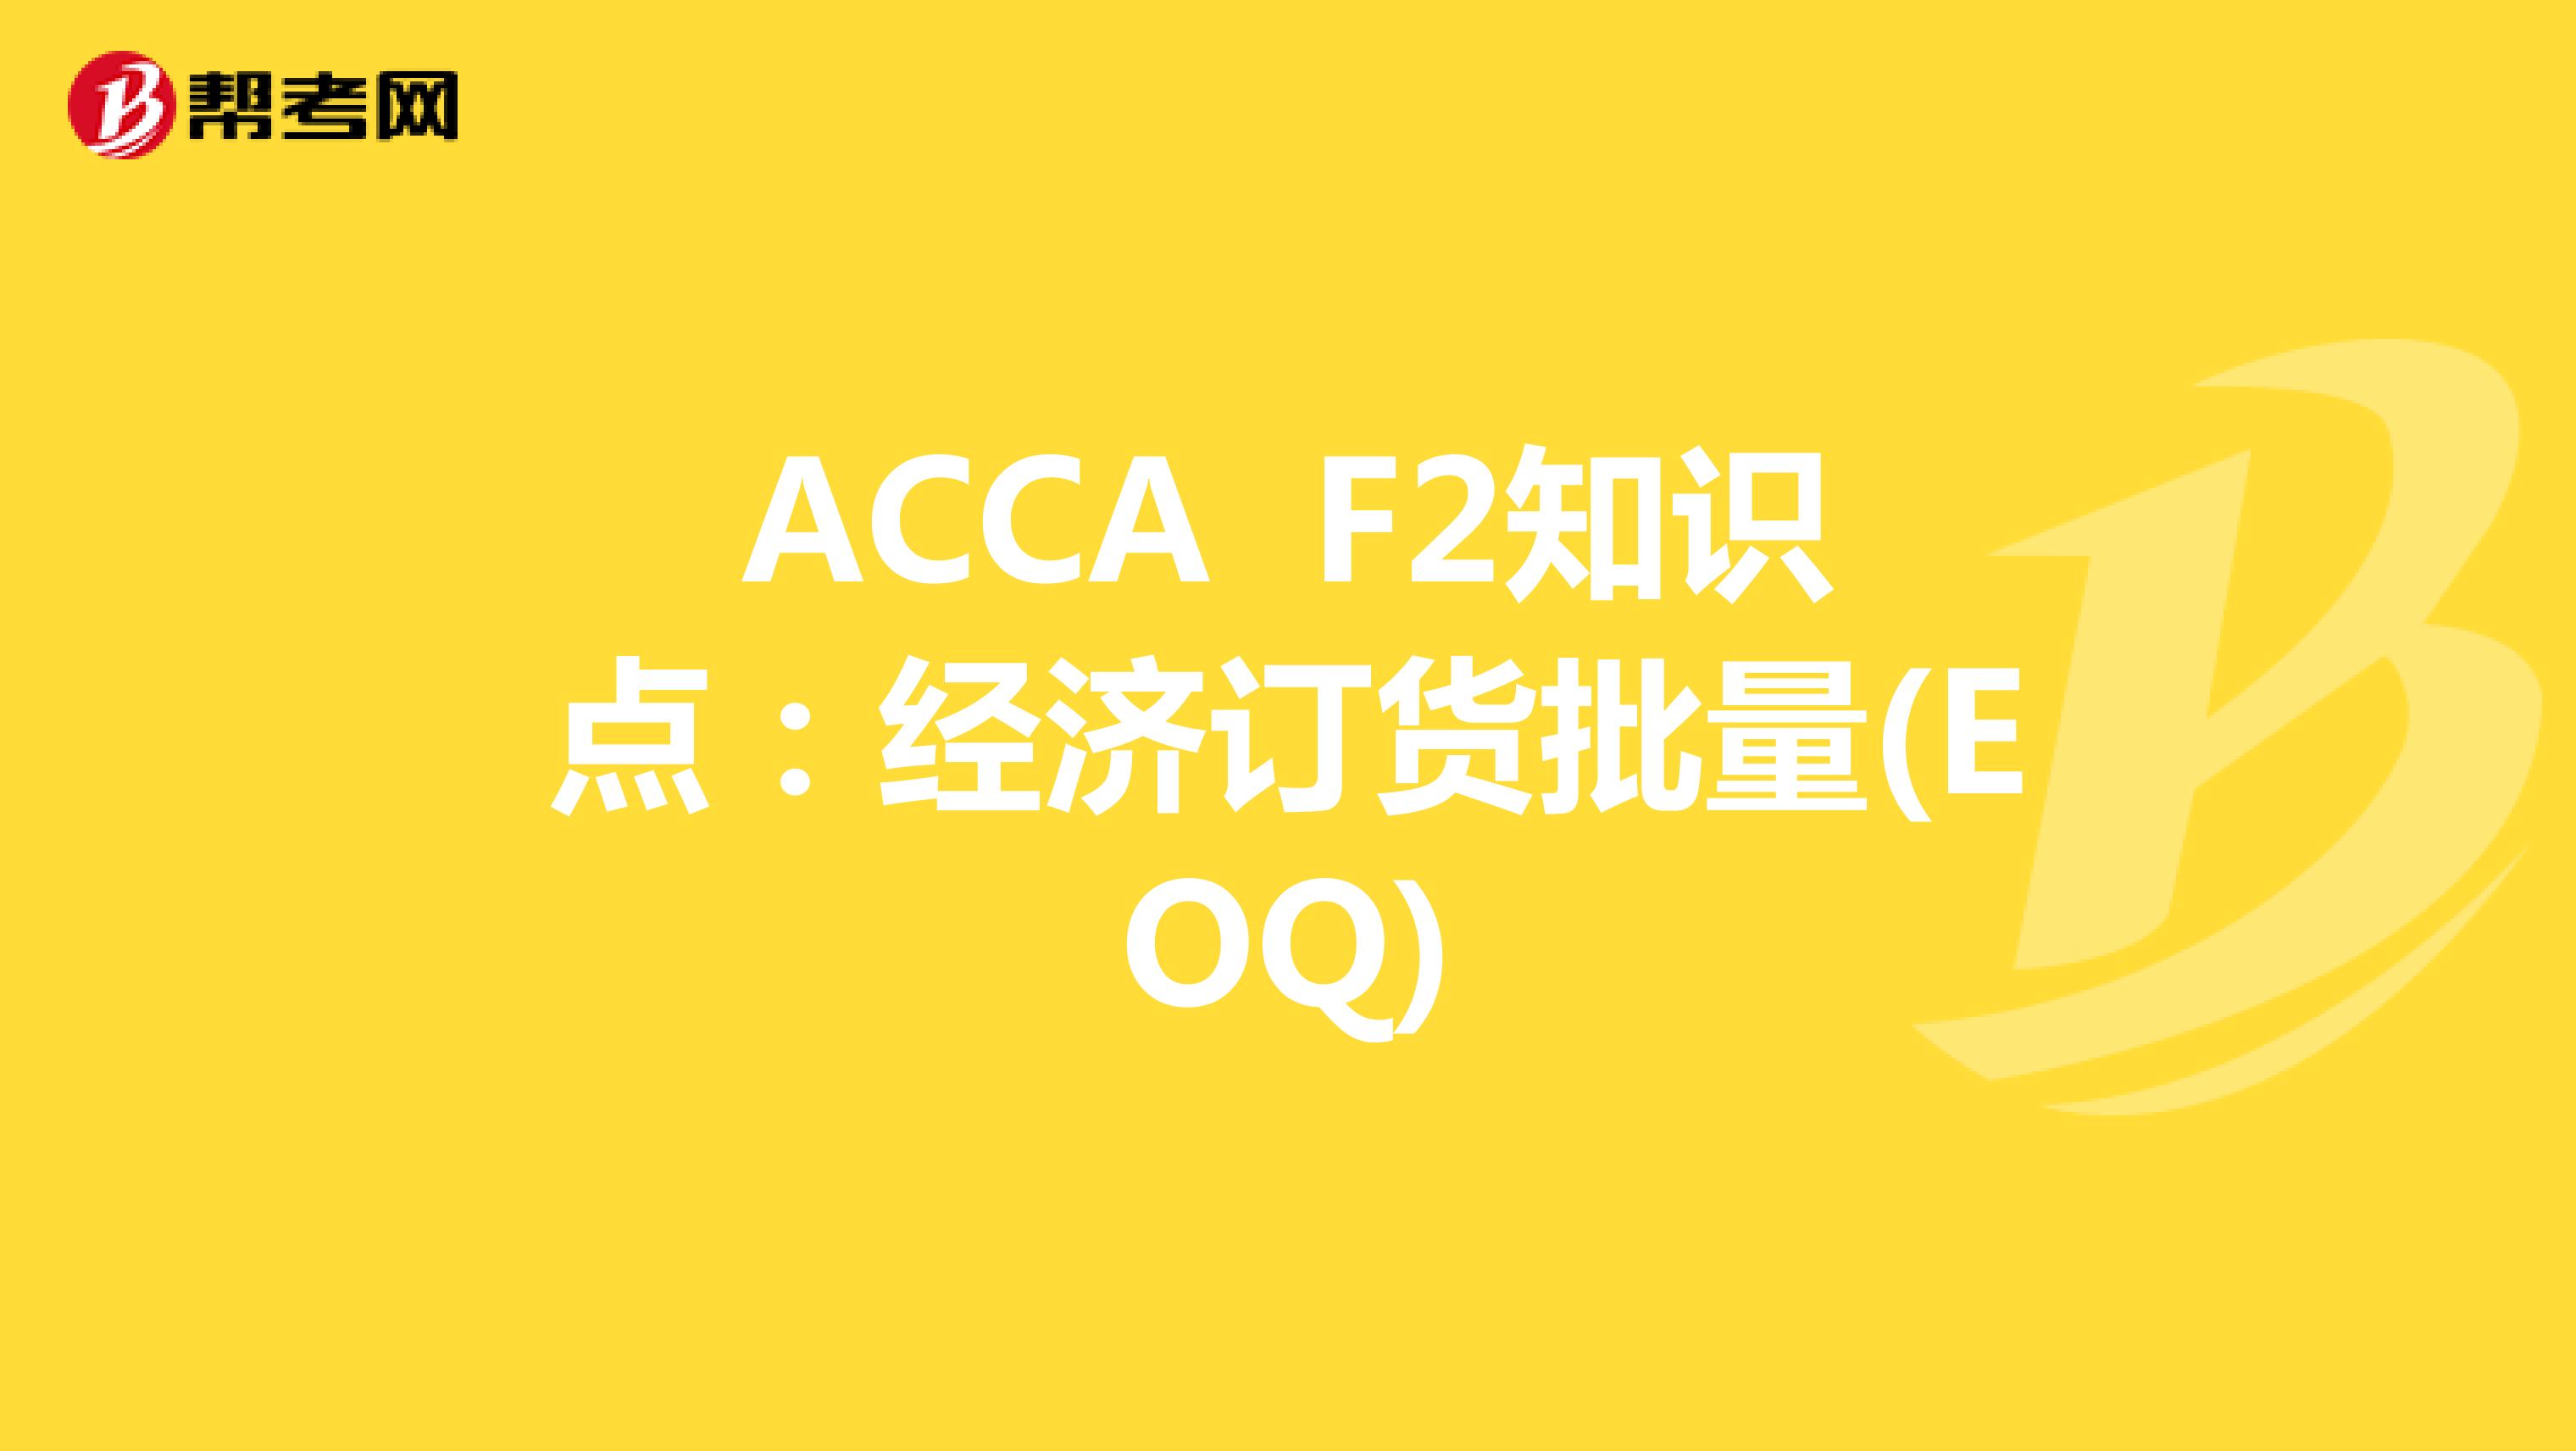 ACCA F2知识点：经济订货批量(EOQ)